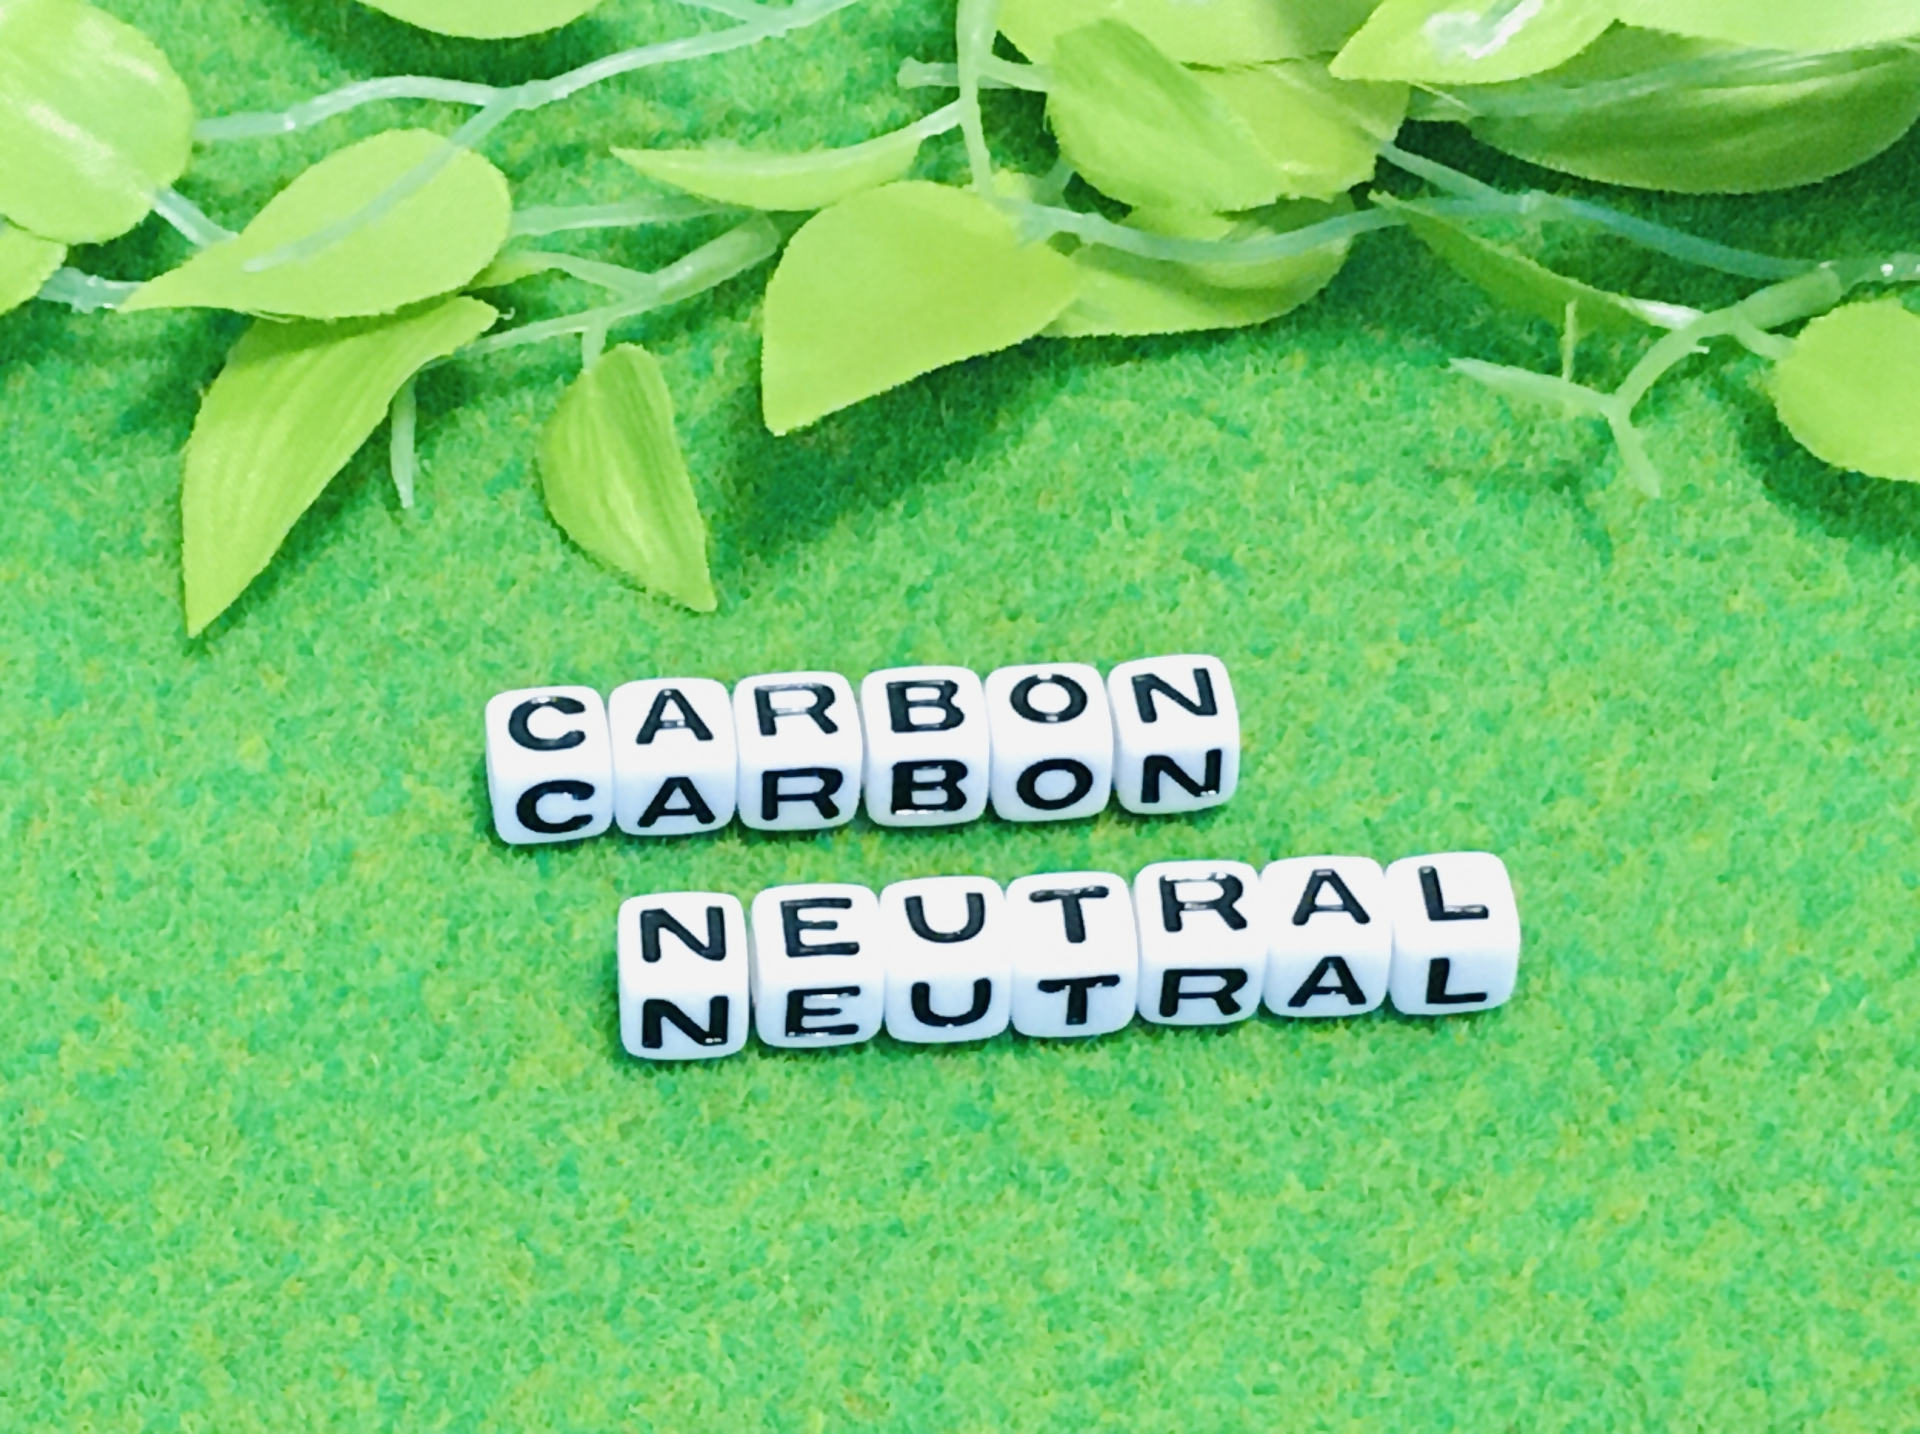 CARBON NUTRALという文字が書かれたサイコロが緑のじゅうたんの上に並べてある。